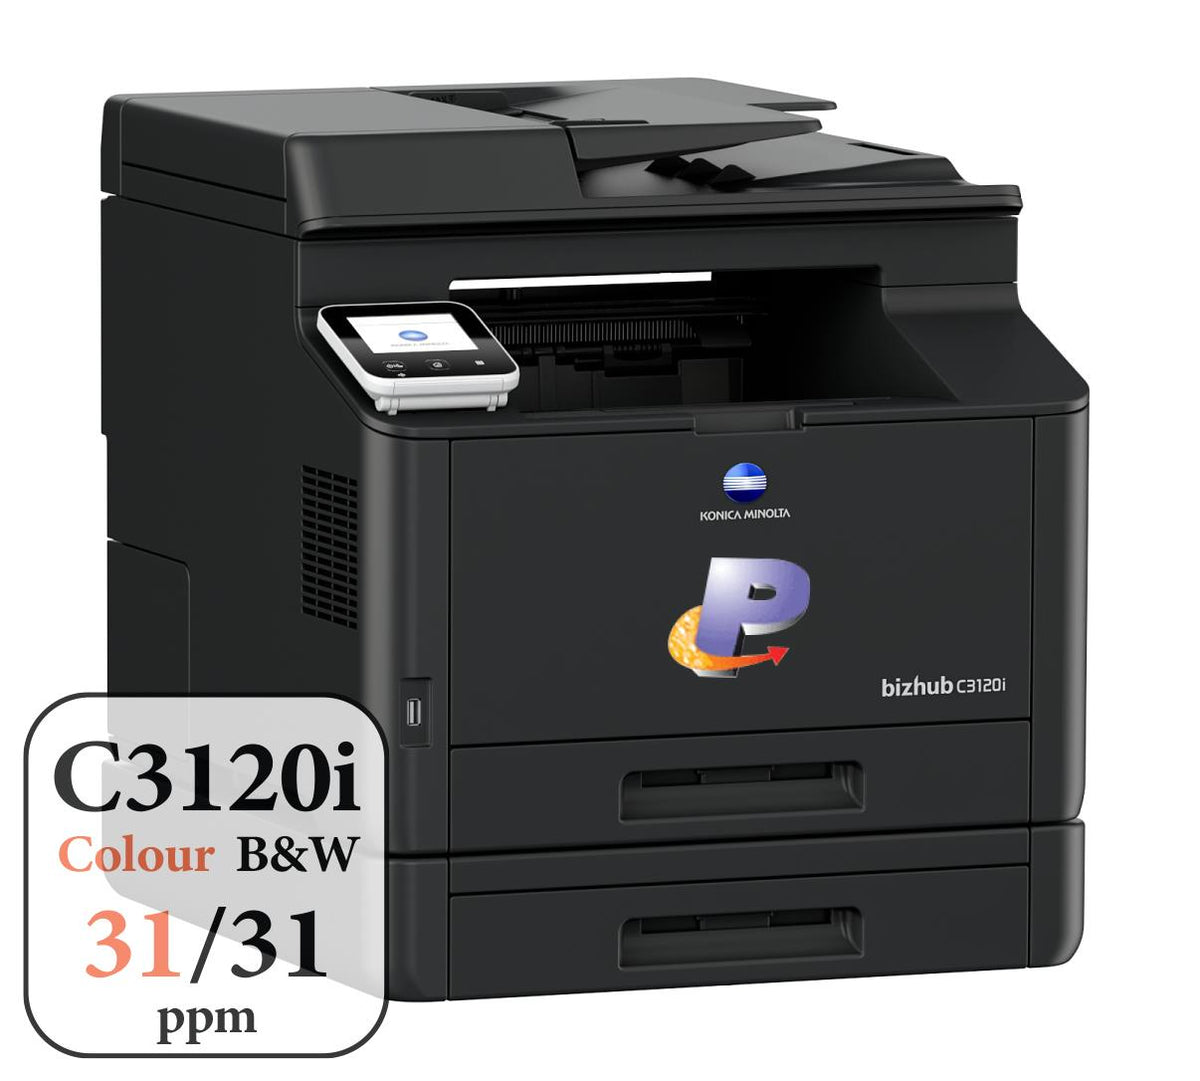 Konica Minolta bizhub C3120i A4 Colour Laser Copier Printer MFD Right Side